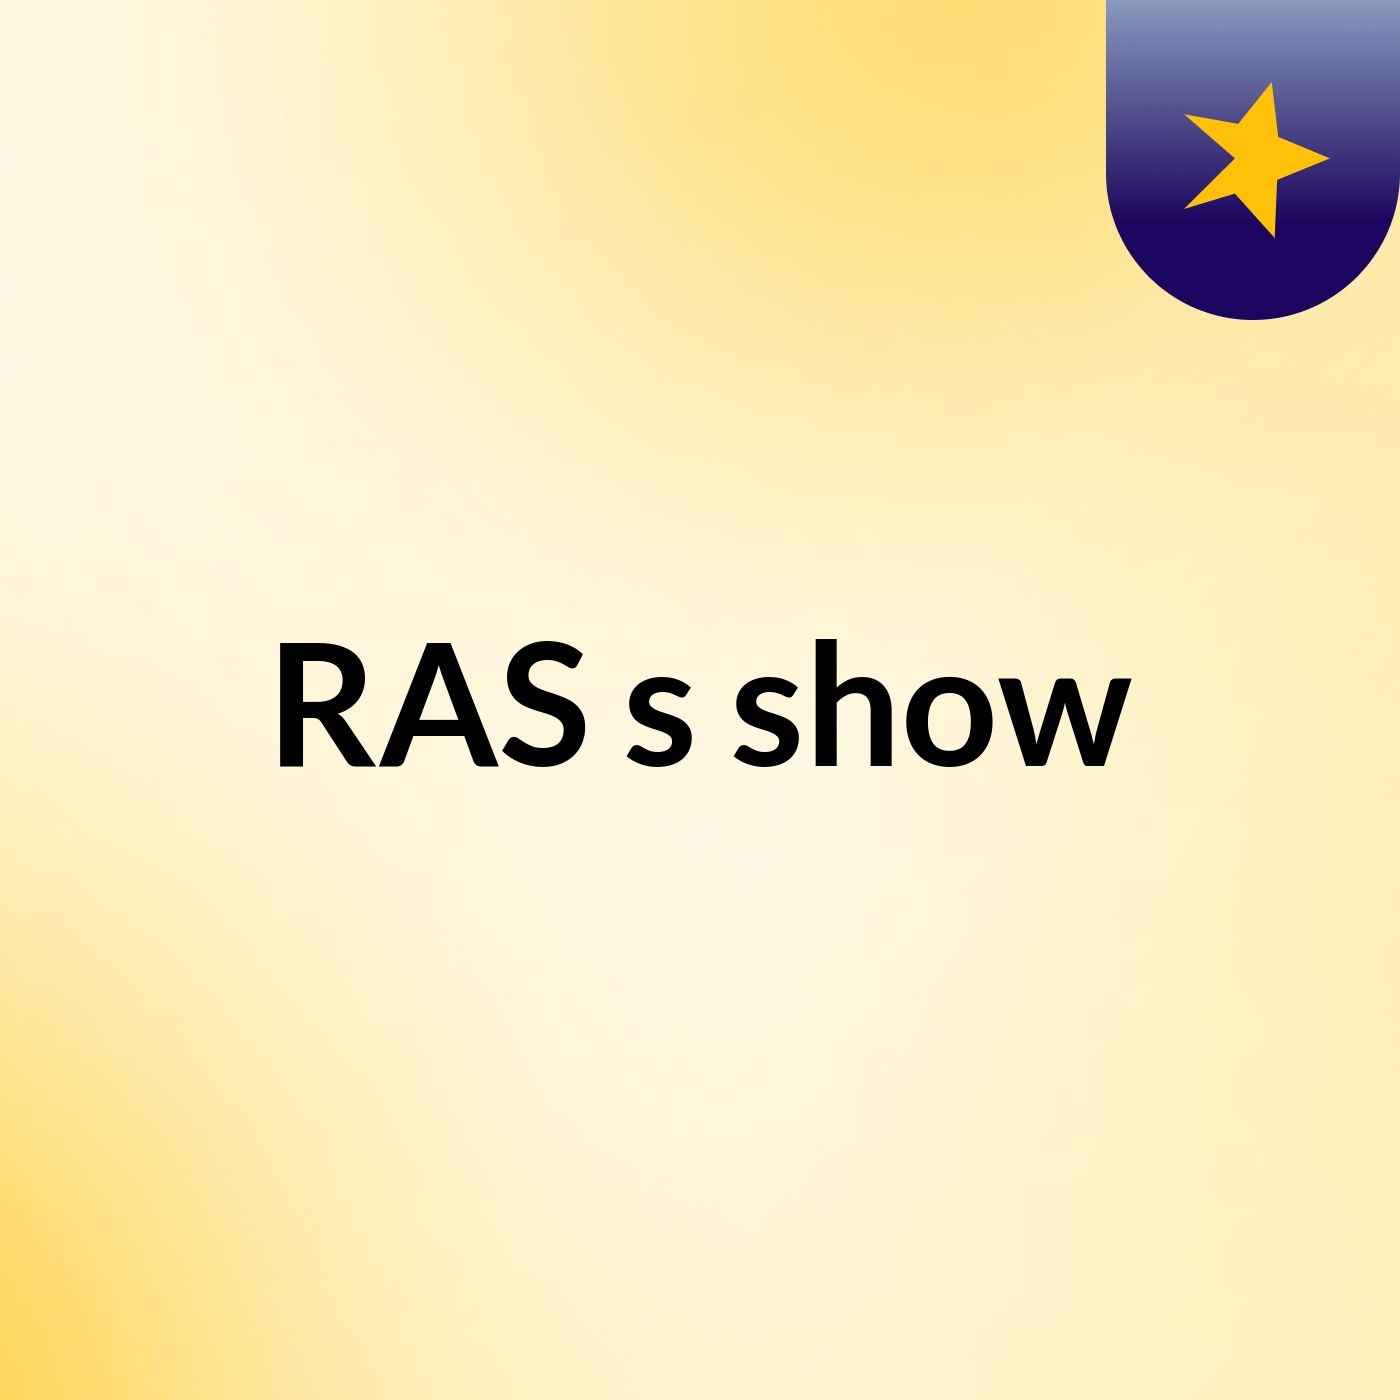 RAS's show